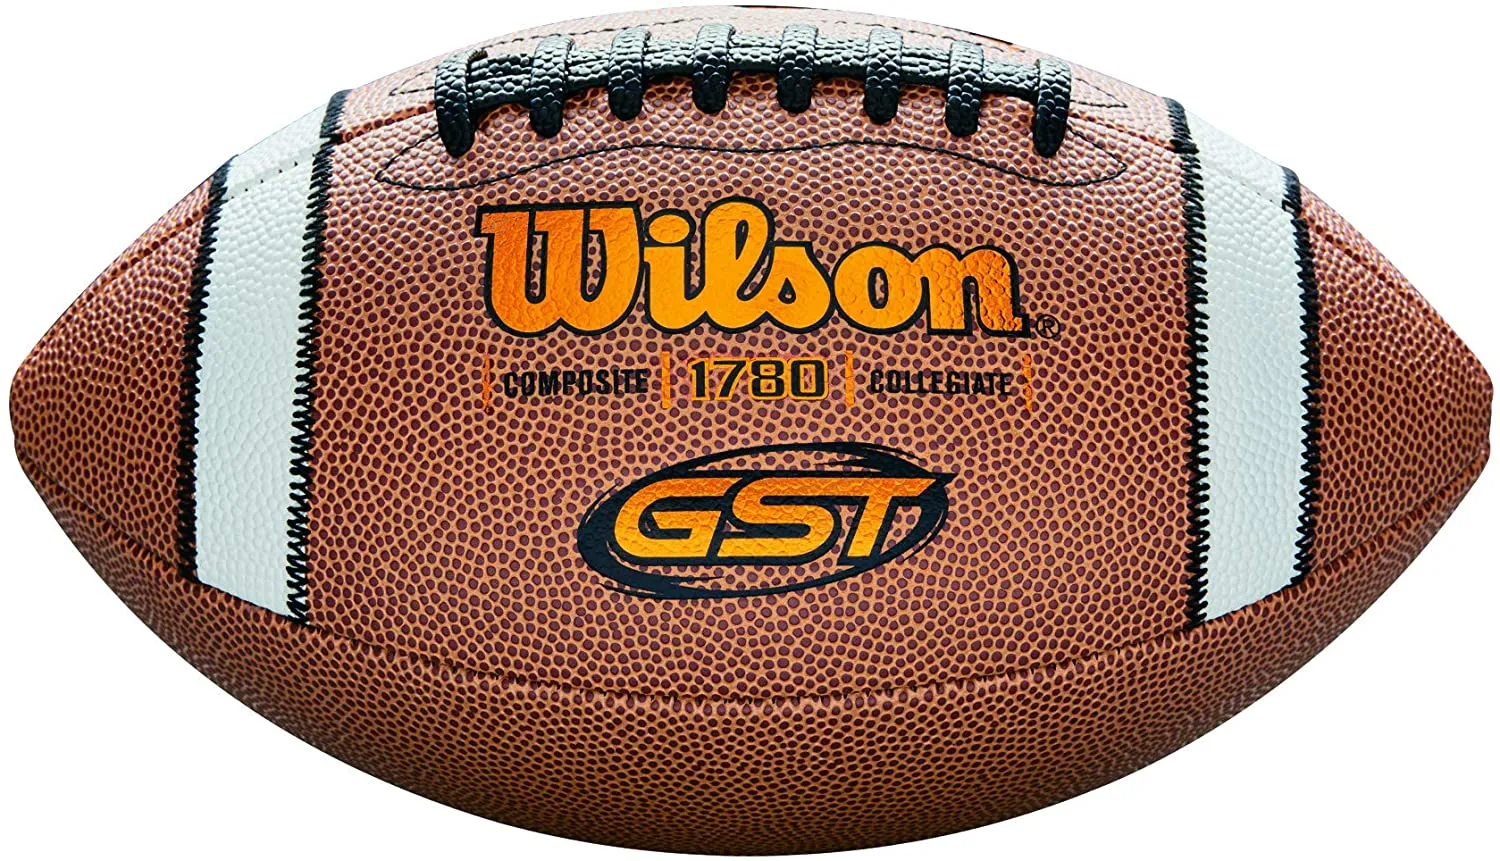 Ballon de Football Américain Wilson GST Composite 1780